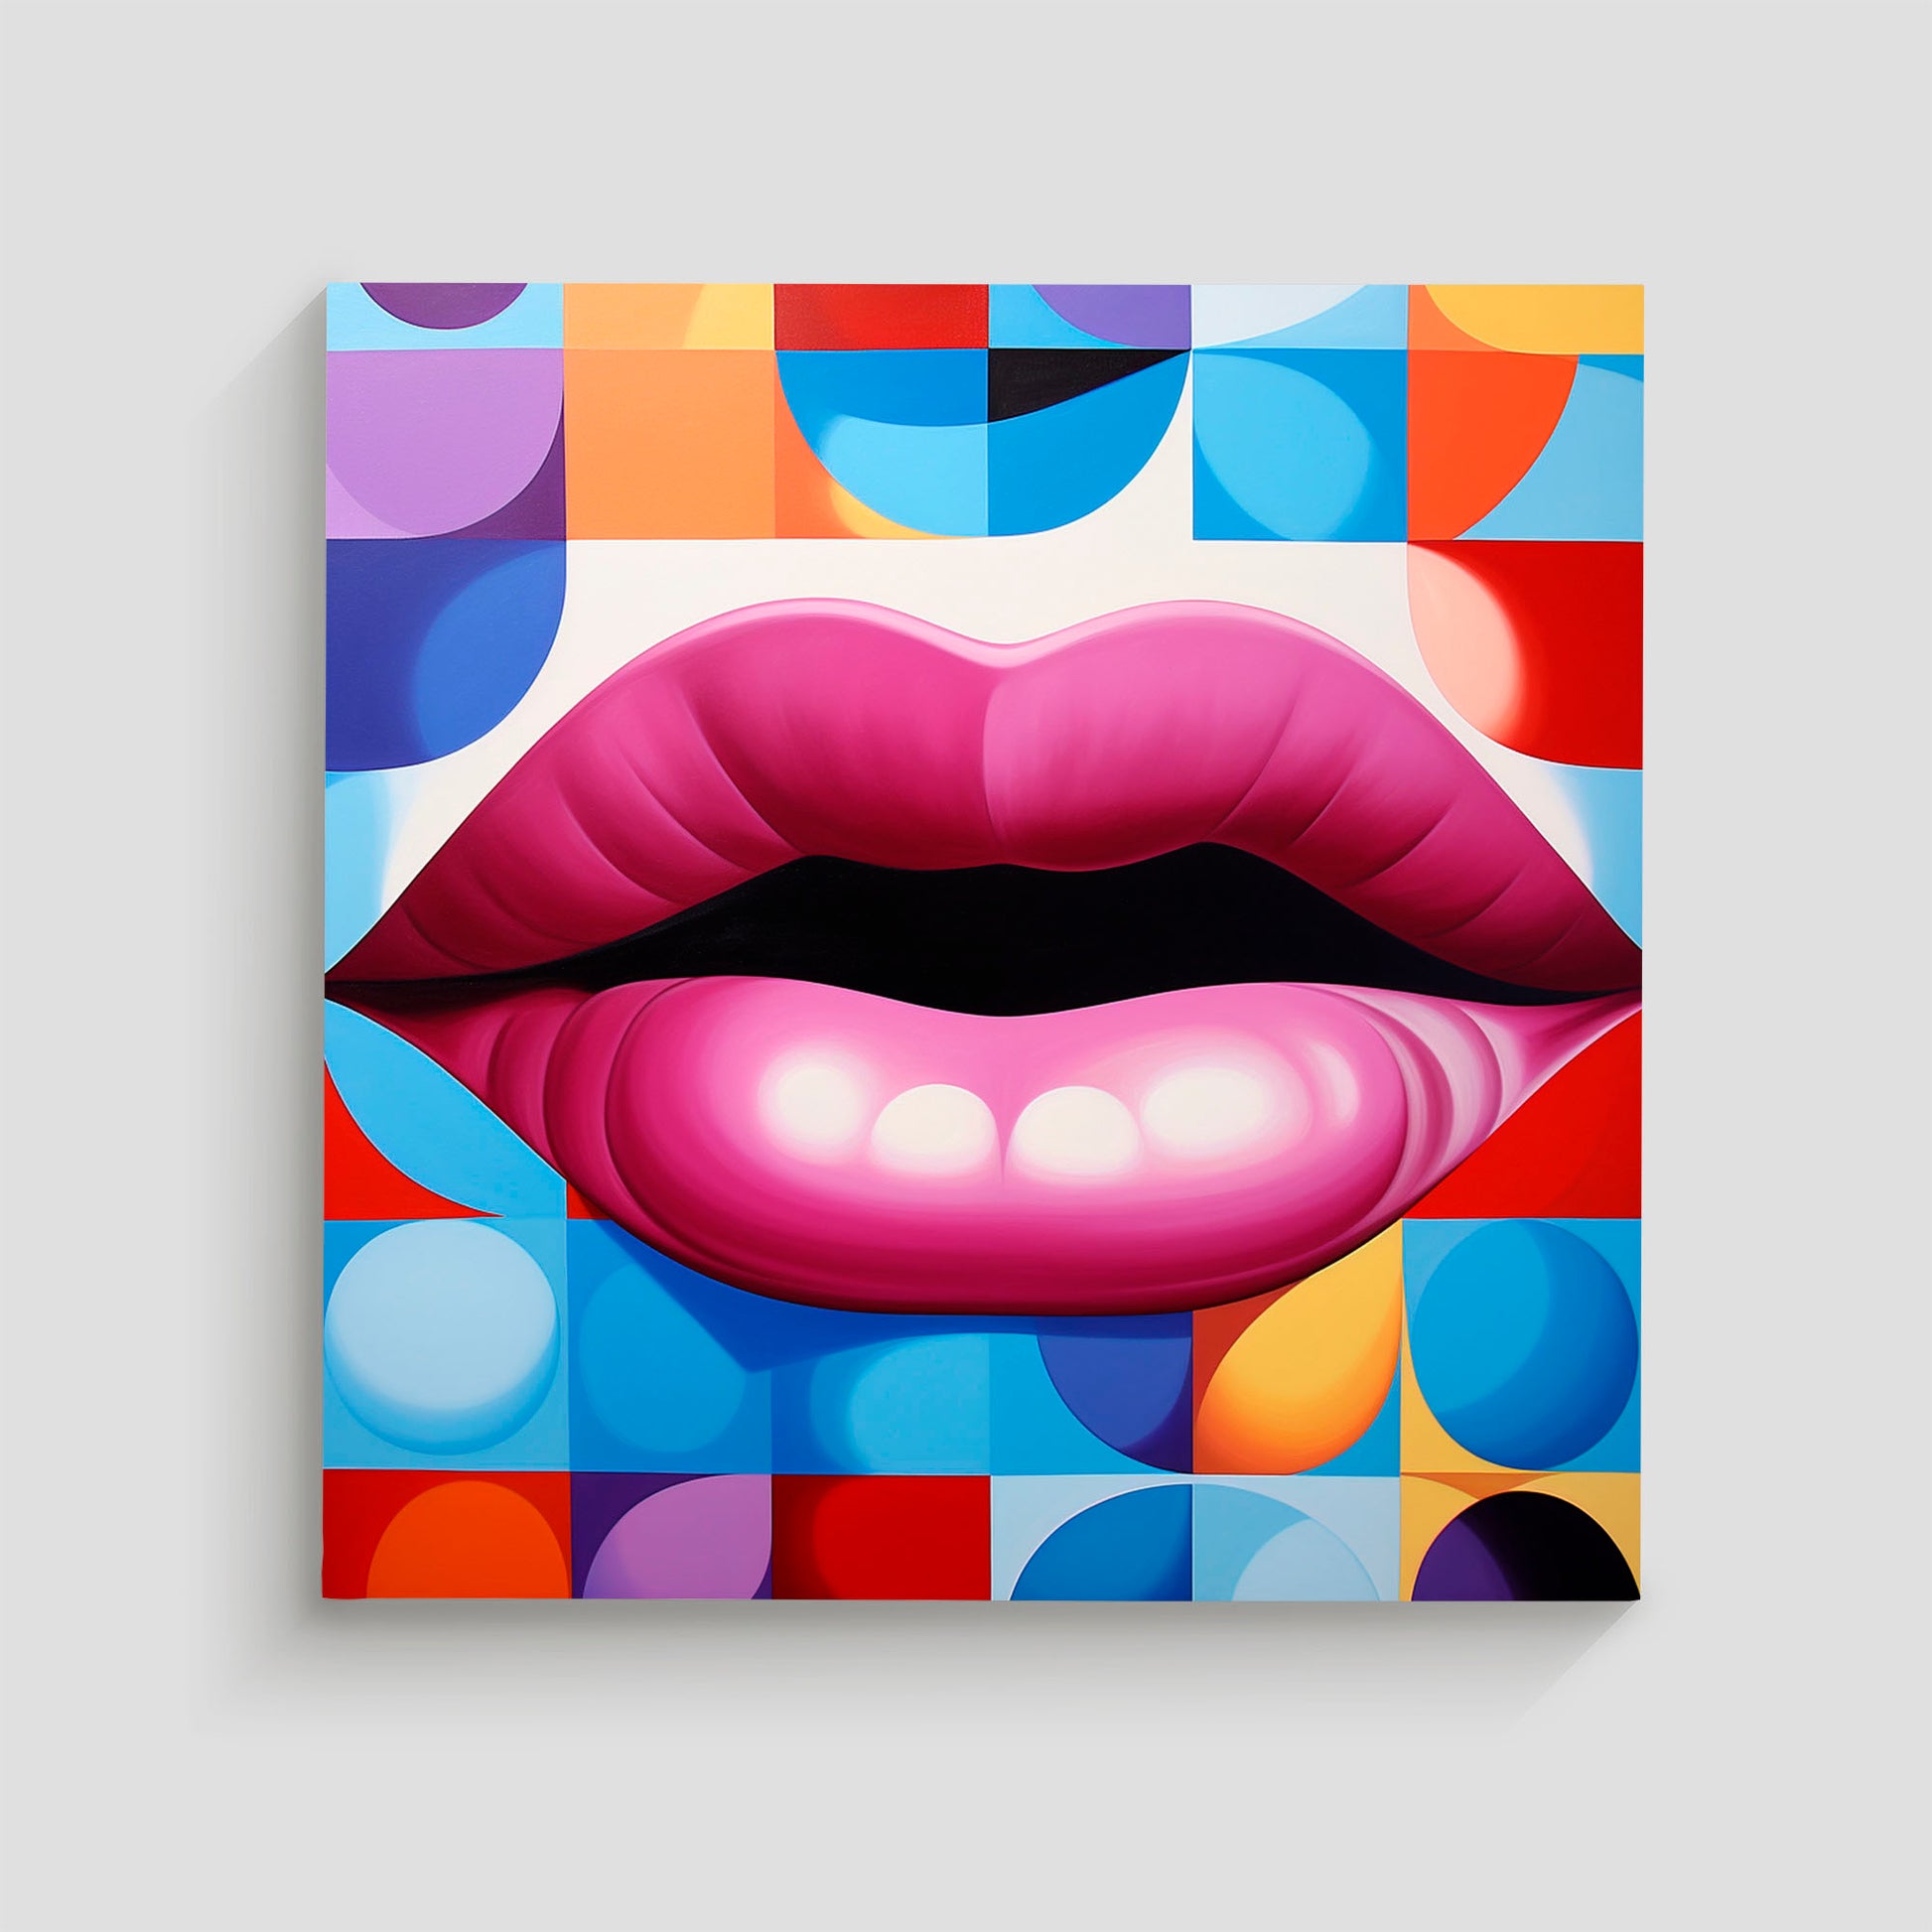 magen de arte pop que muestra unos labios rojos prominentes sobre un fondo geométrico colorido, con formas y patrones vibrantes en tonos variados.